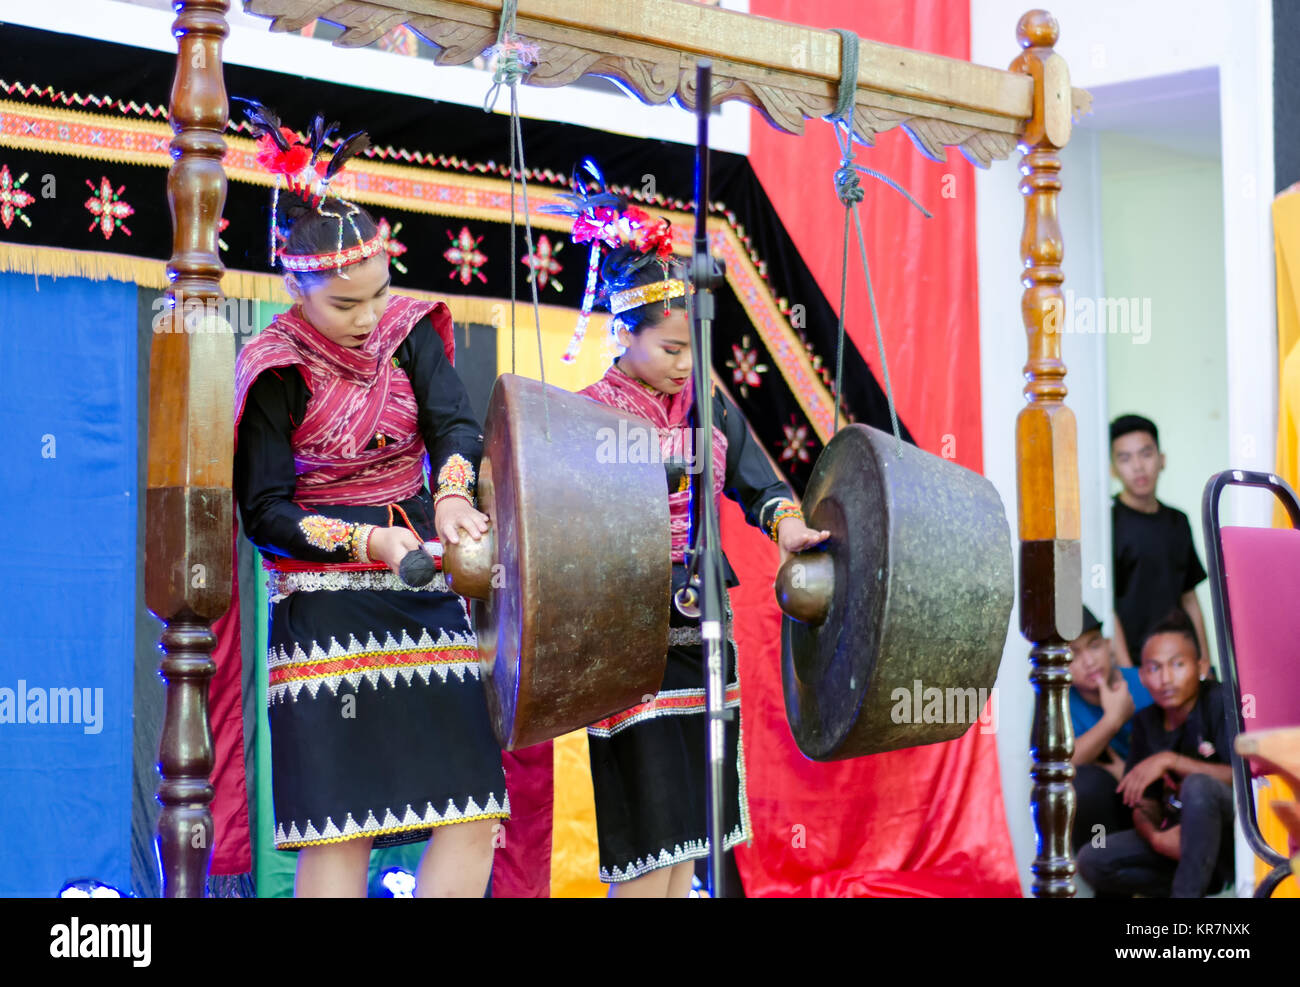 Tuaran Kota Kinabalu, Malaysia - Dezember 02, 2017: Ureinwohner von Sabah Borneo in Ostmalaysia spielen ein Gong eine traditionelle Musik Instrument d Stockfoto